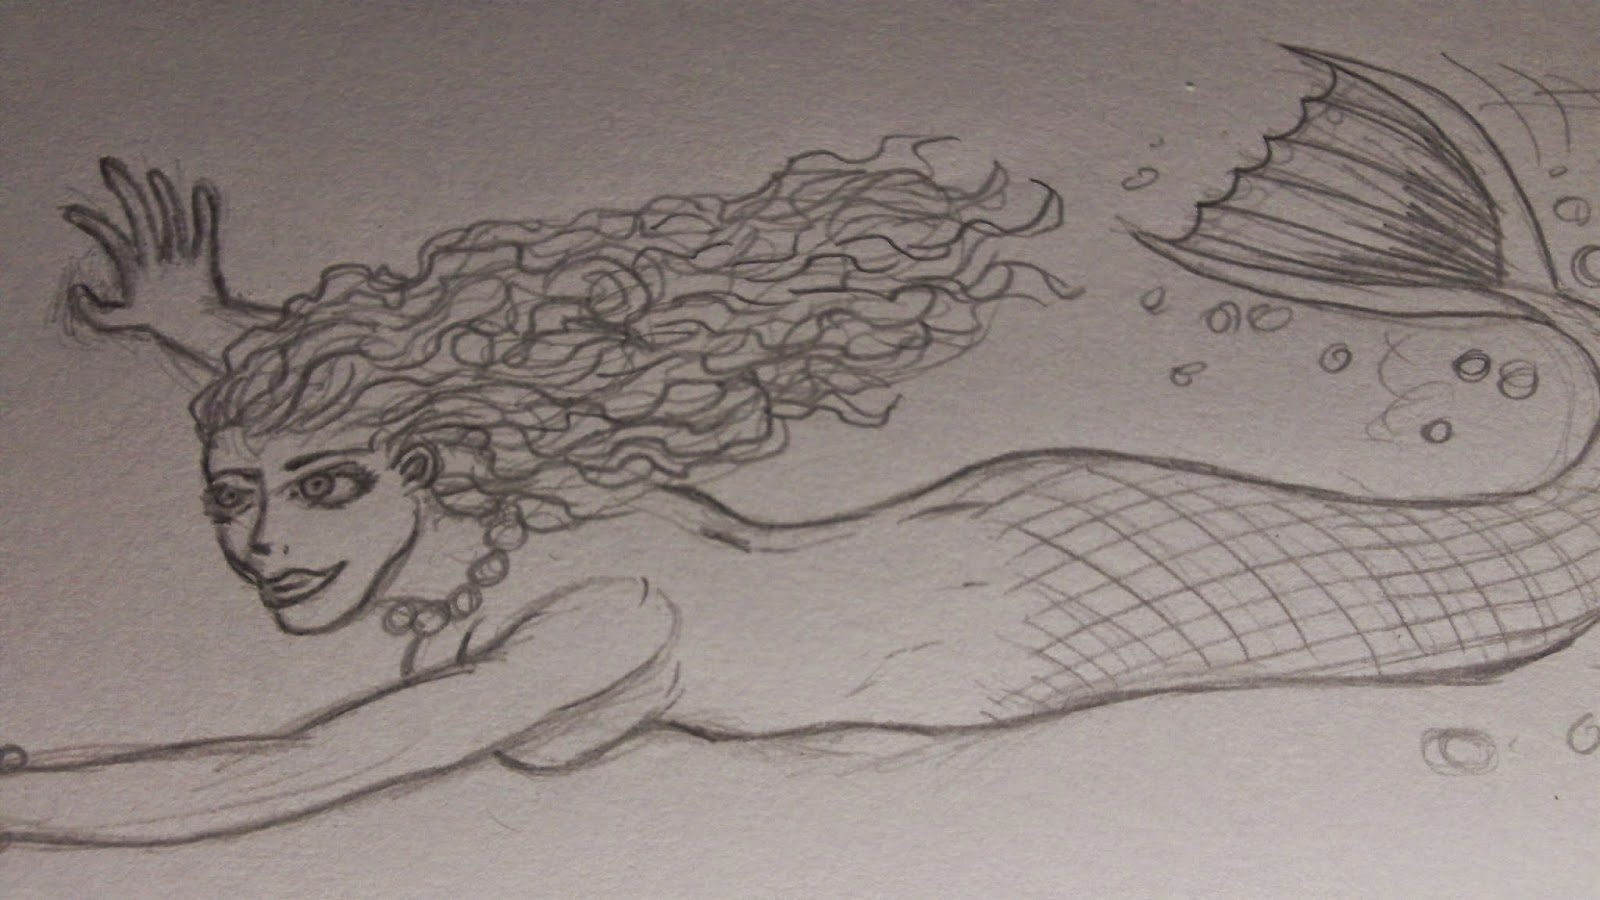 mermaid sketch